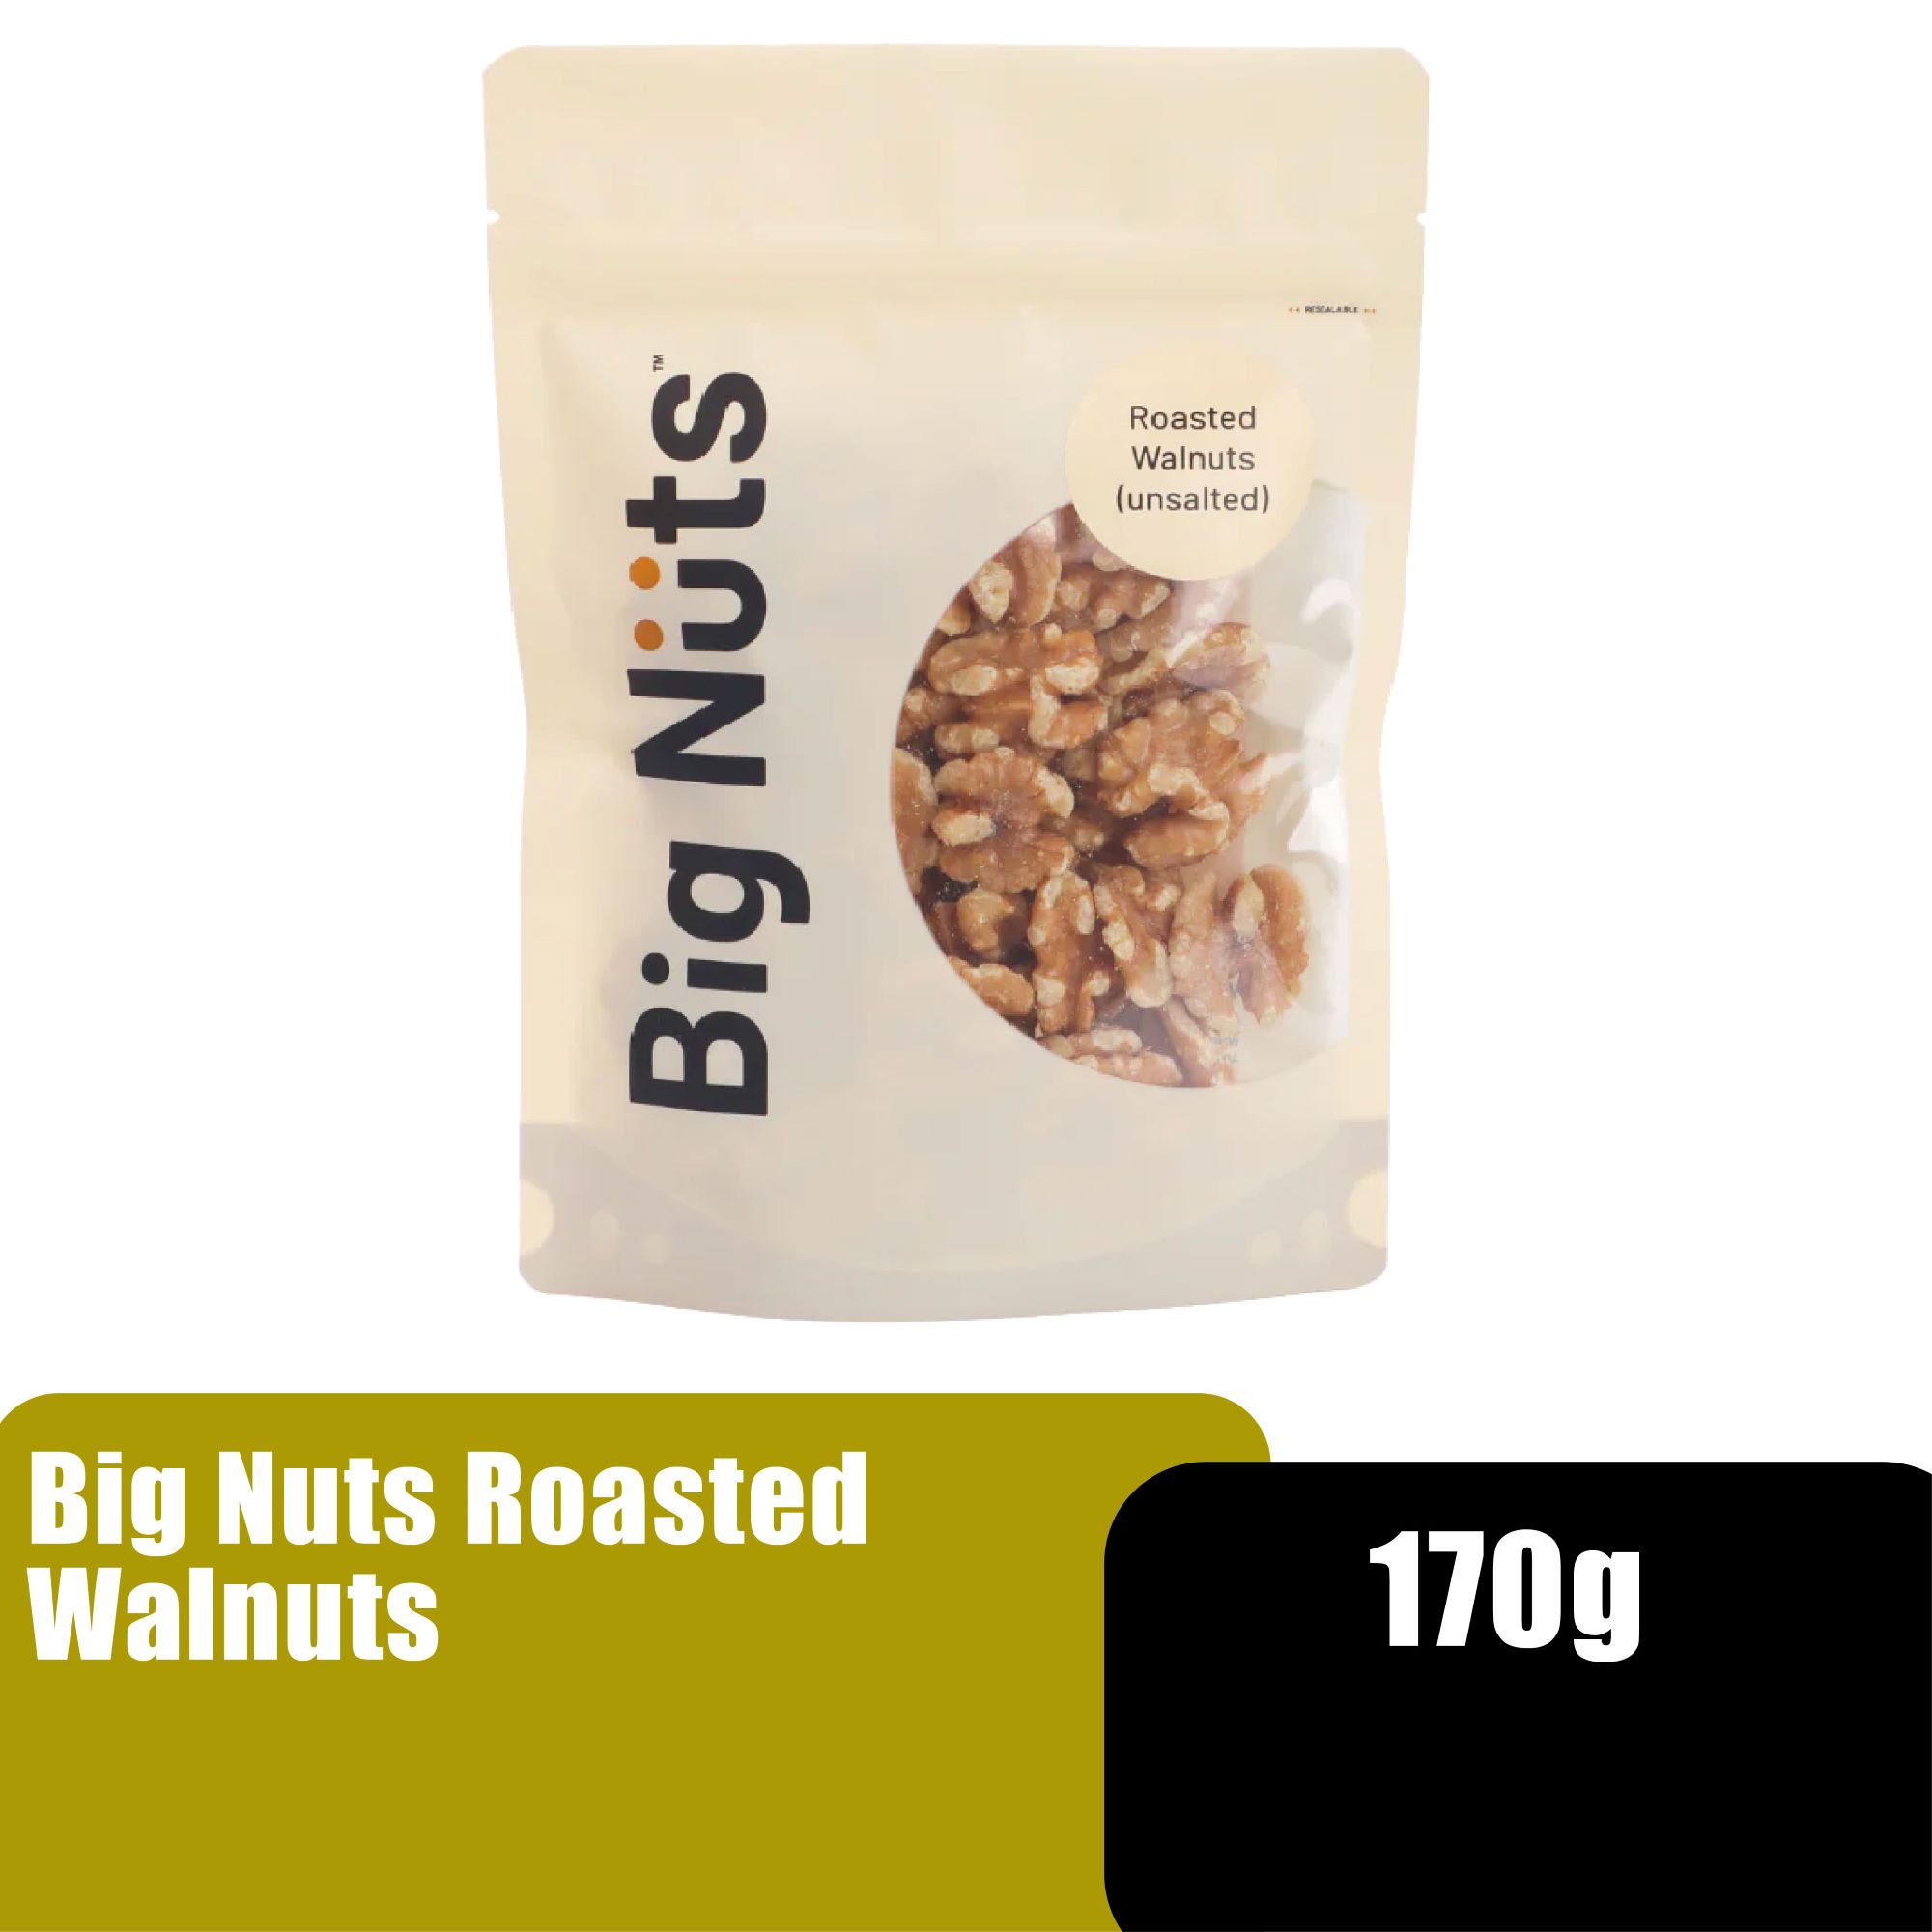 BIG NUTS ROASTED WALNUTS 170G